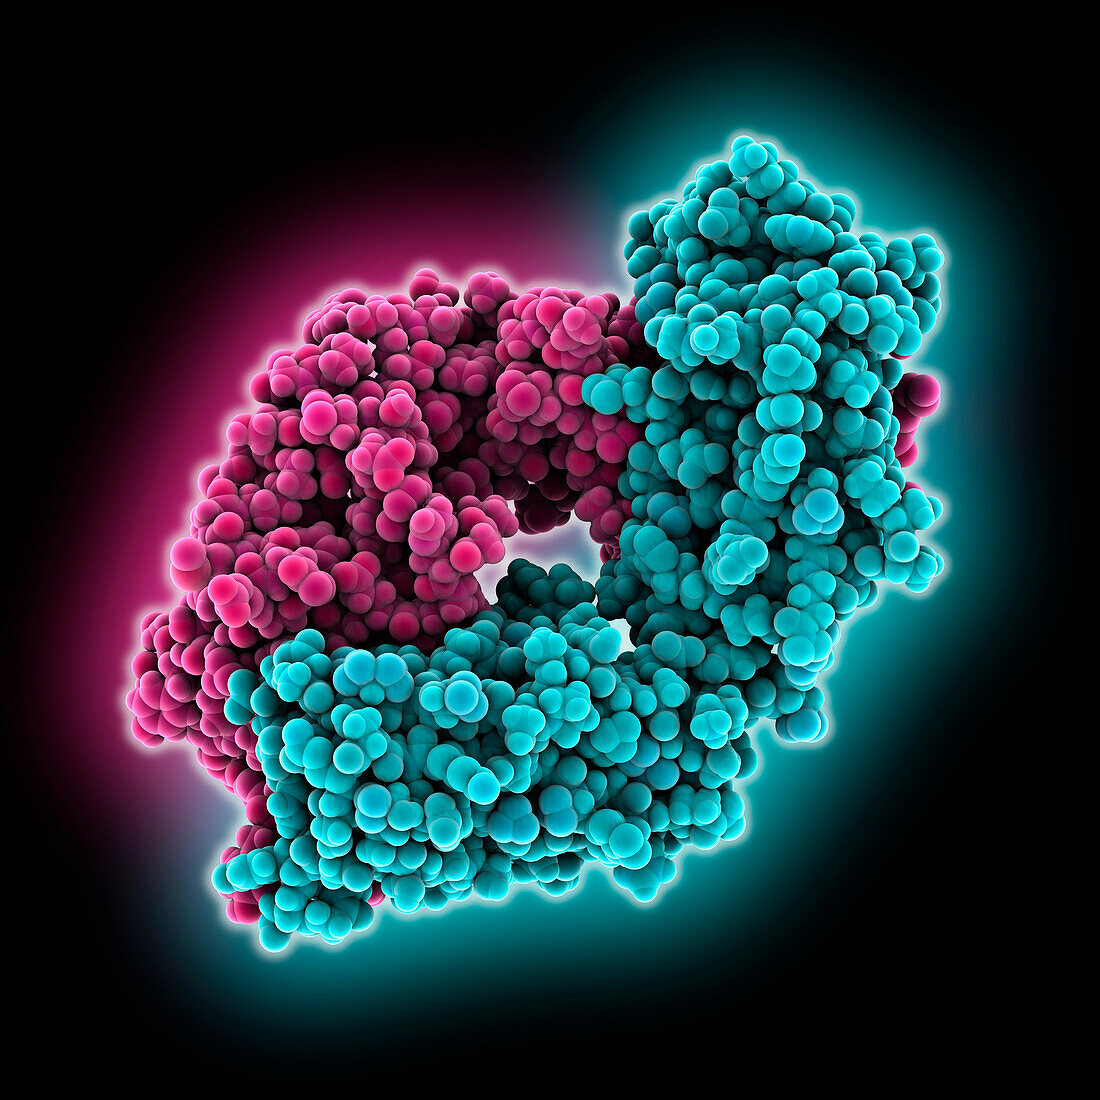 Anti-HIV antibody CG10, illustration